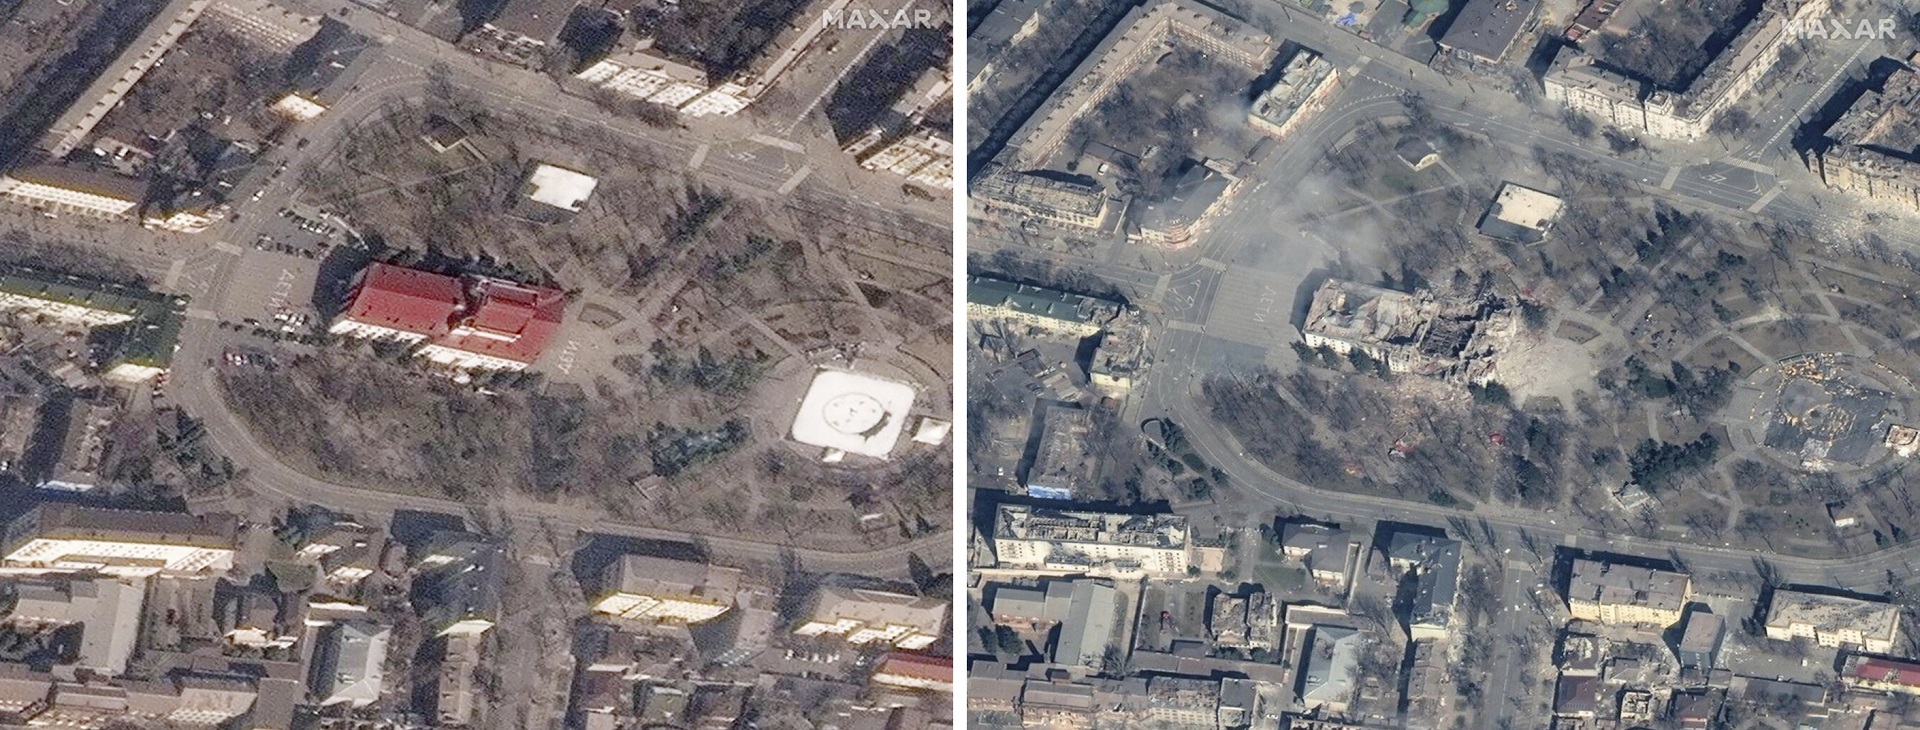 El teatro, antes y después del ataque (Maxar vía AP)